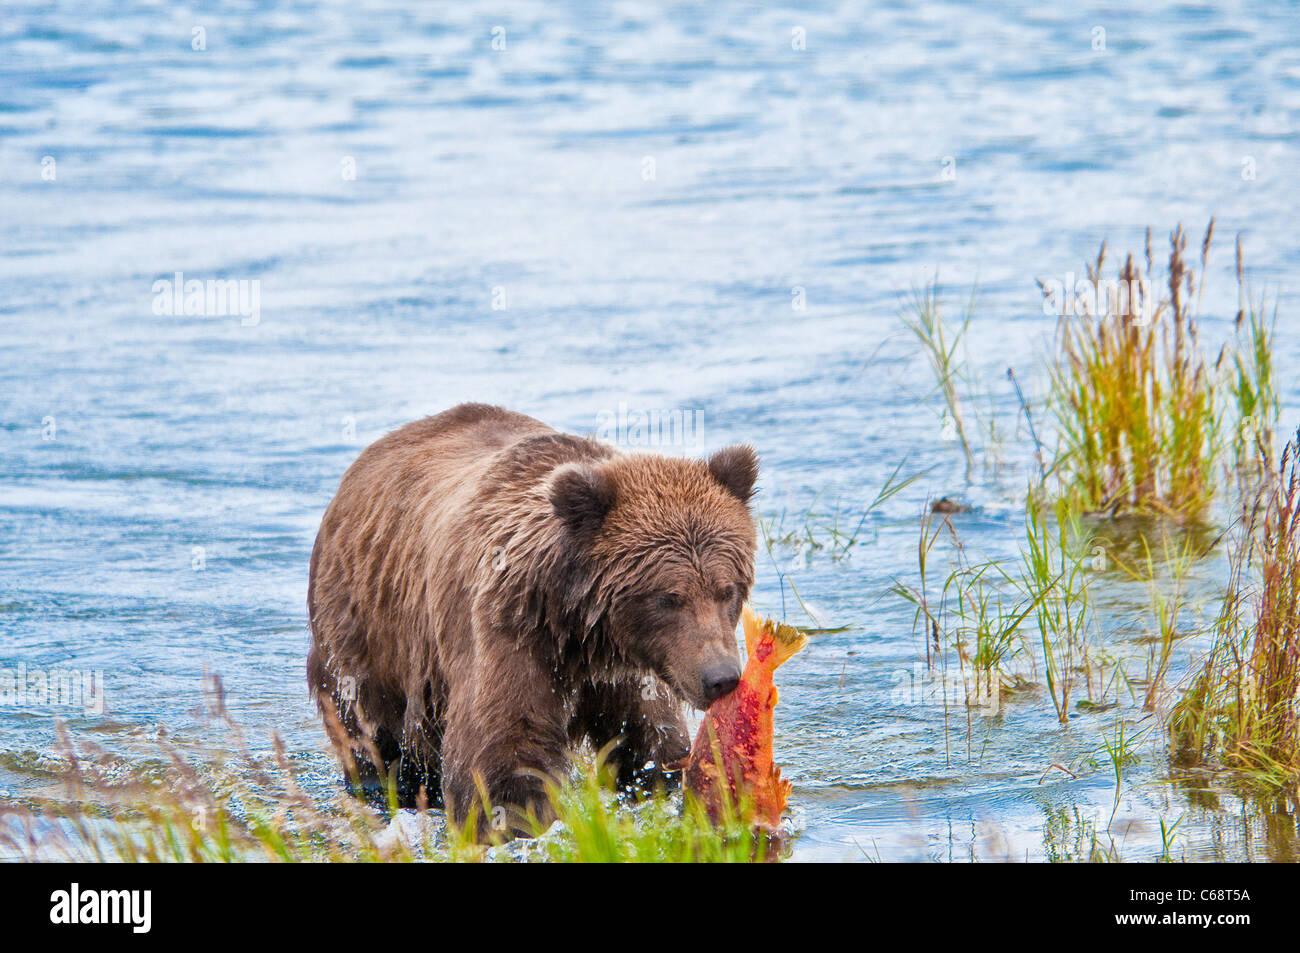 Grizzly Bear cub carrying salmon, Ursus arctos horriblis, Brooks River, Katmai National Park, Alaska, USA Stock Photo